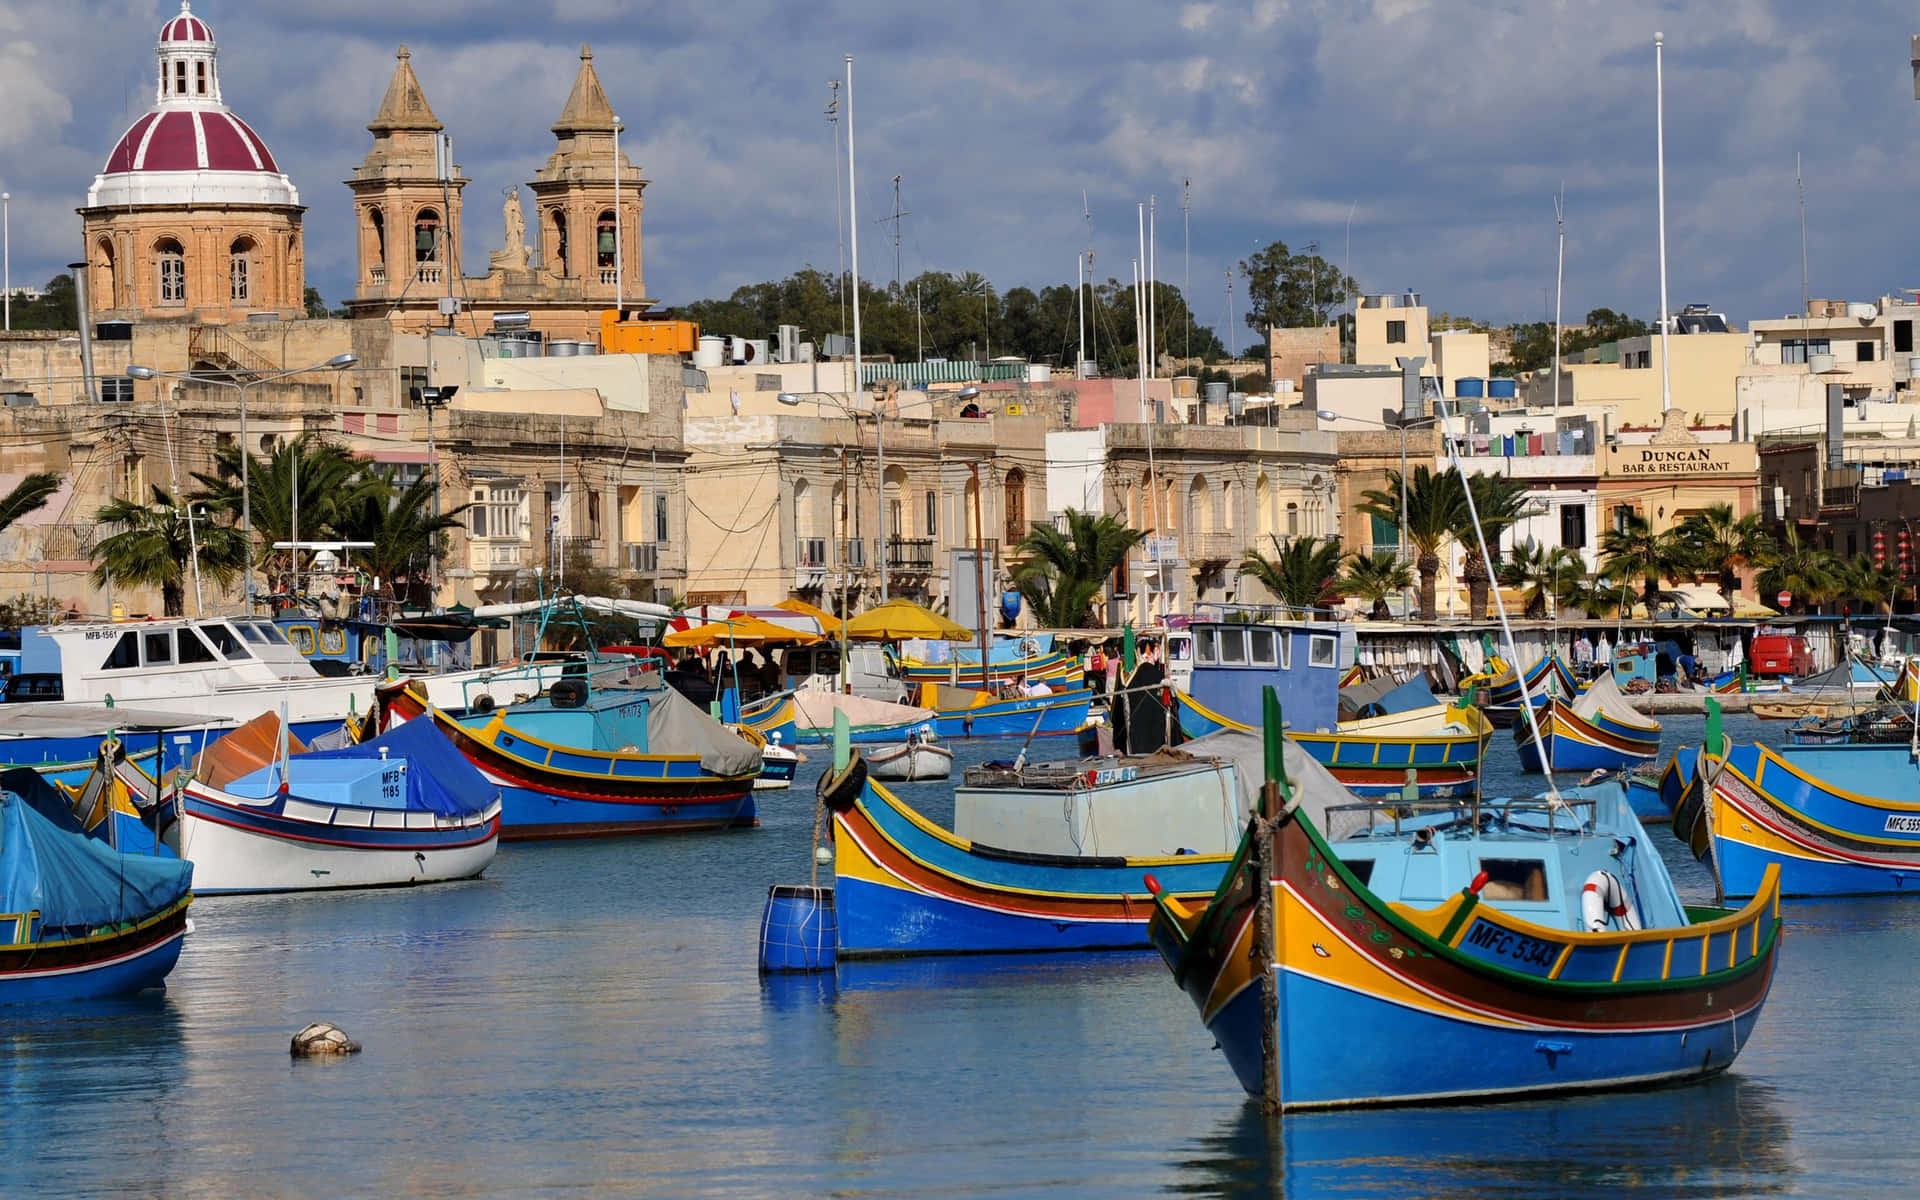 Impresionanteatardecer Sobre La Línea Costera De Malta